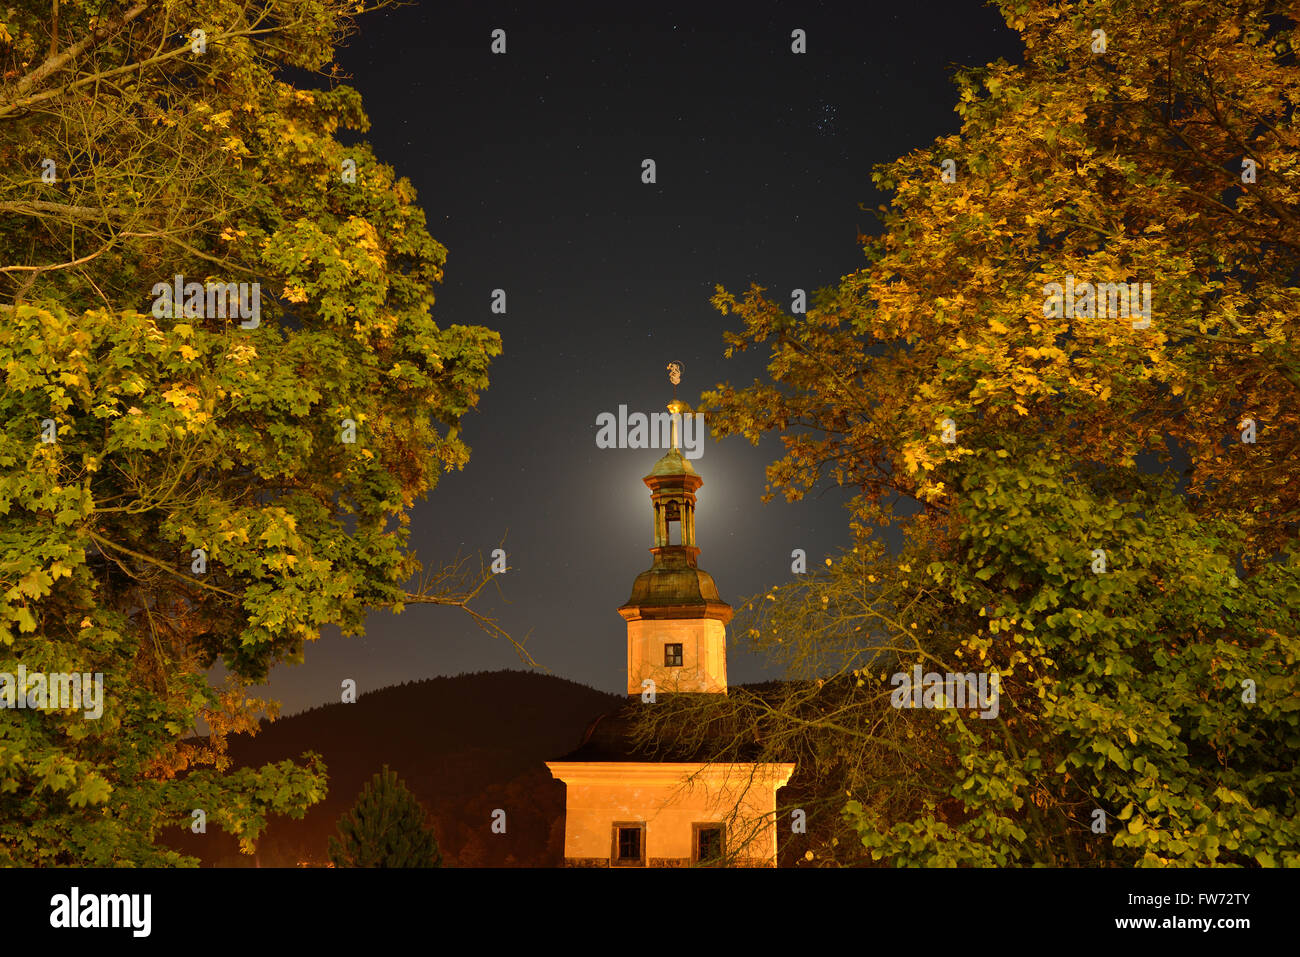 Église et feuillage illuminés par les lumières de la rue avec la lune derrière le clocher.Loket, district de Sokolov, Bohême, République tchèque. Banque D'Images